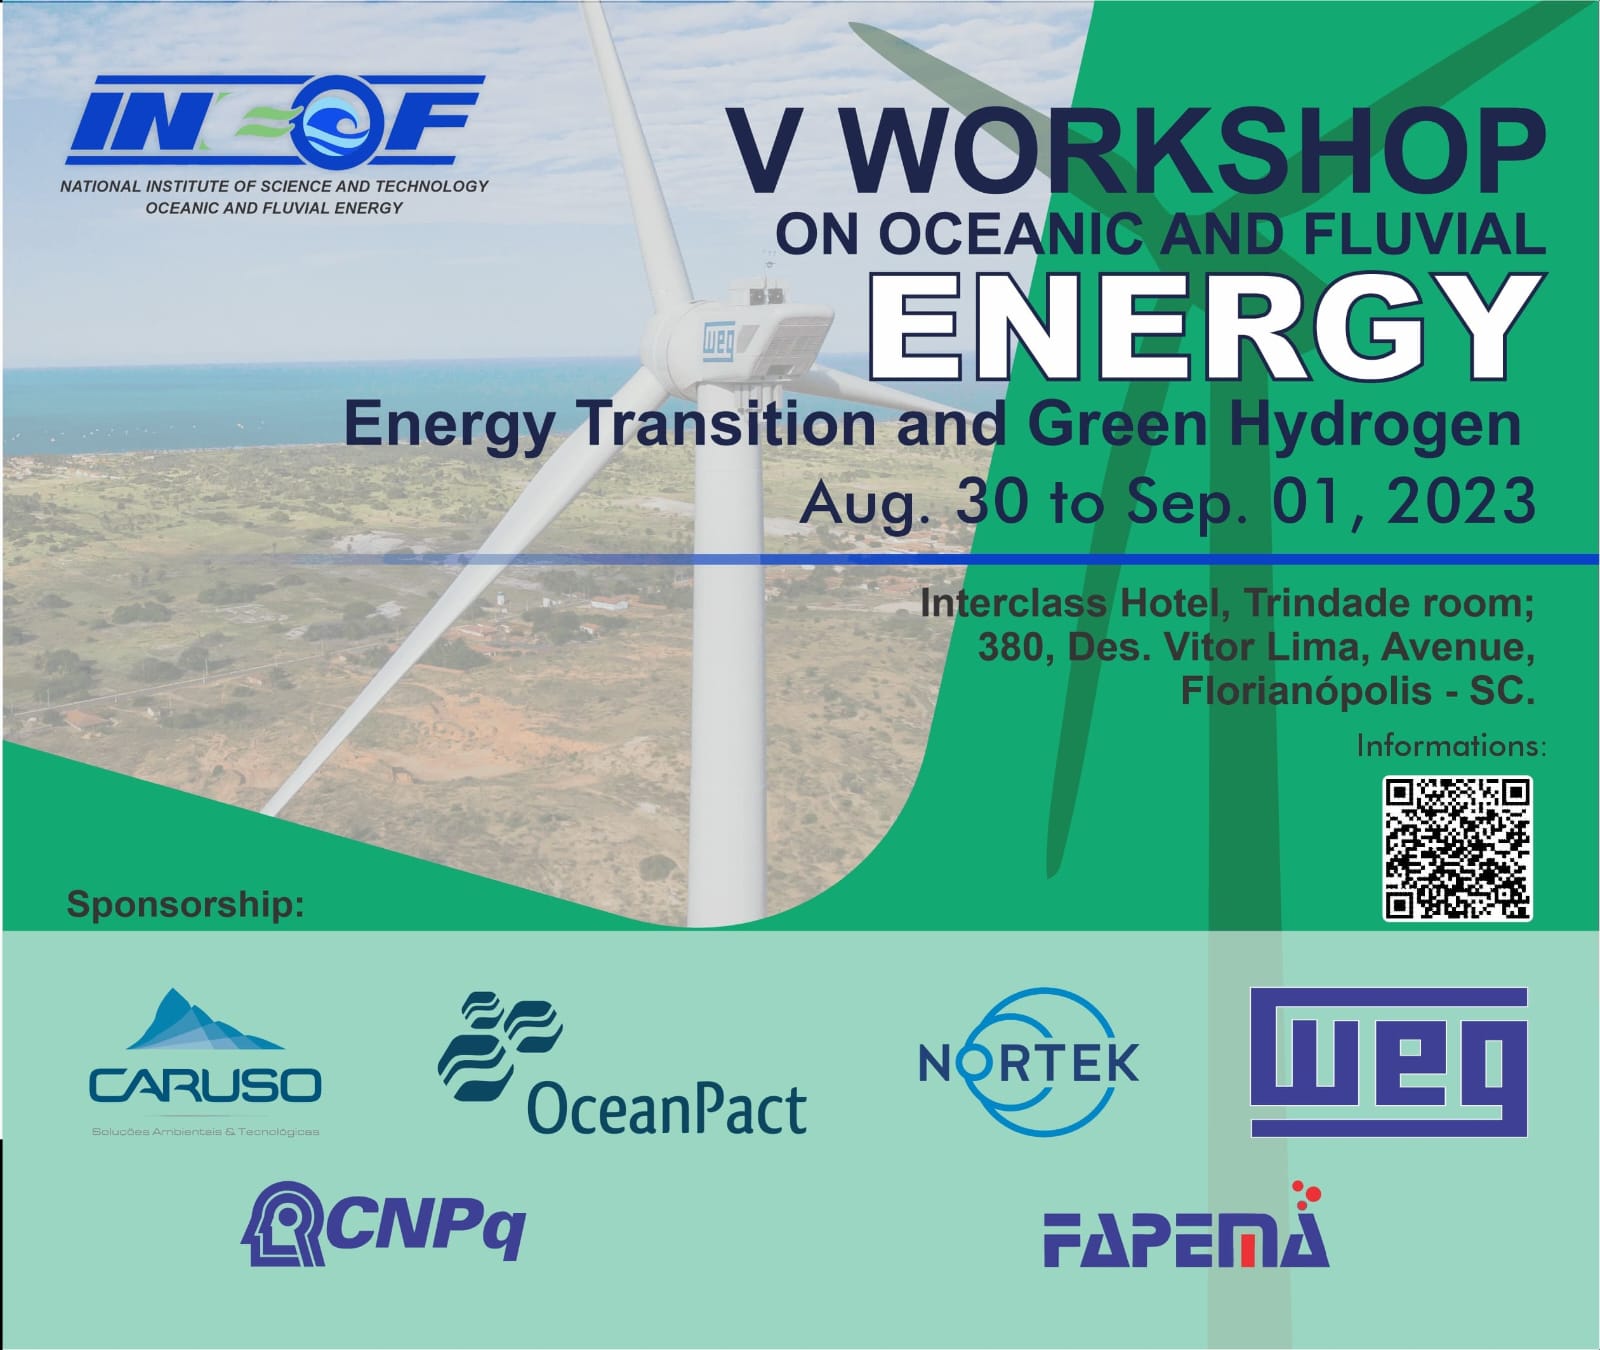 V Workshop de Energias Oceânicas e Fluviais está com inscrições abertas.